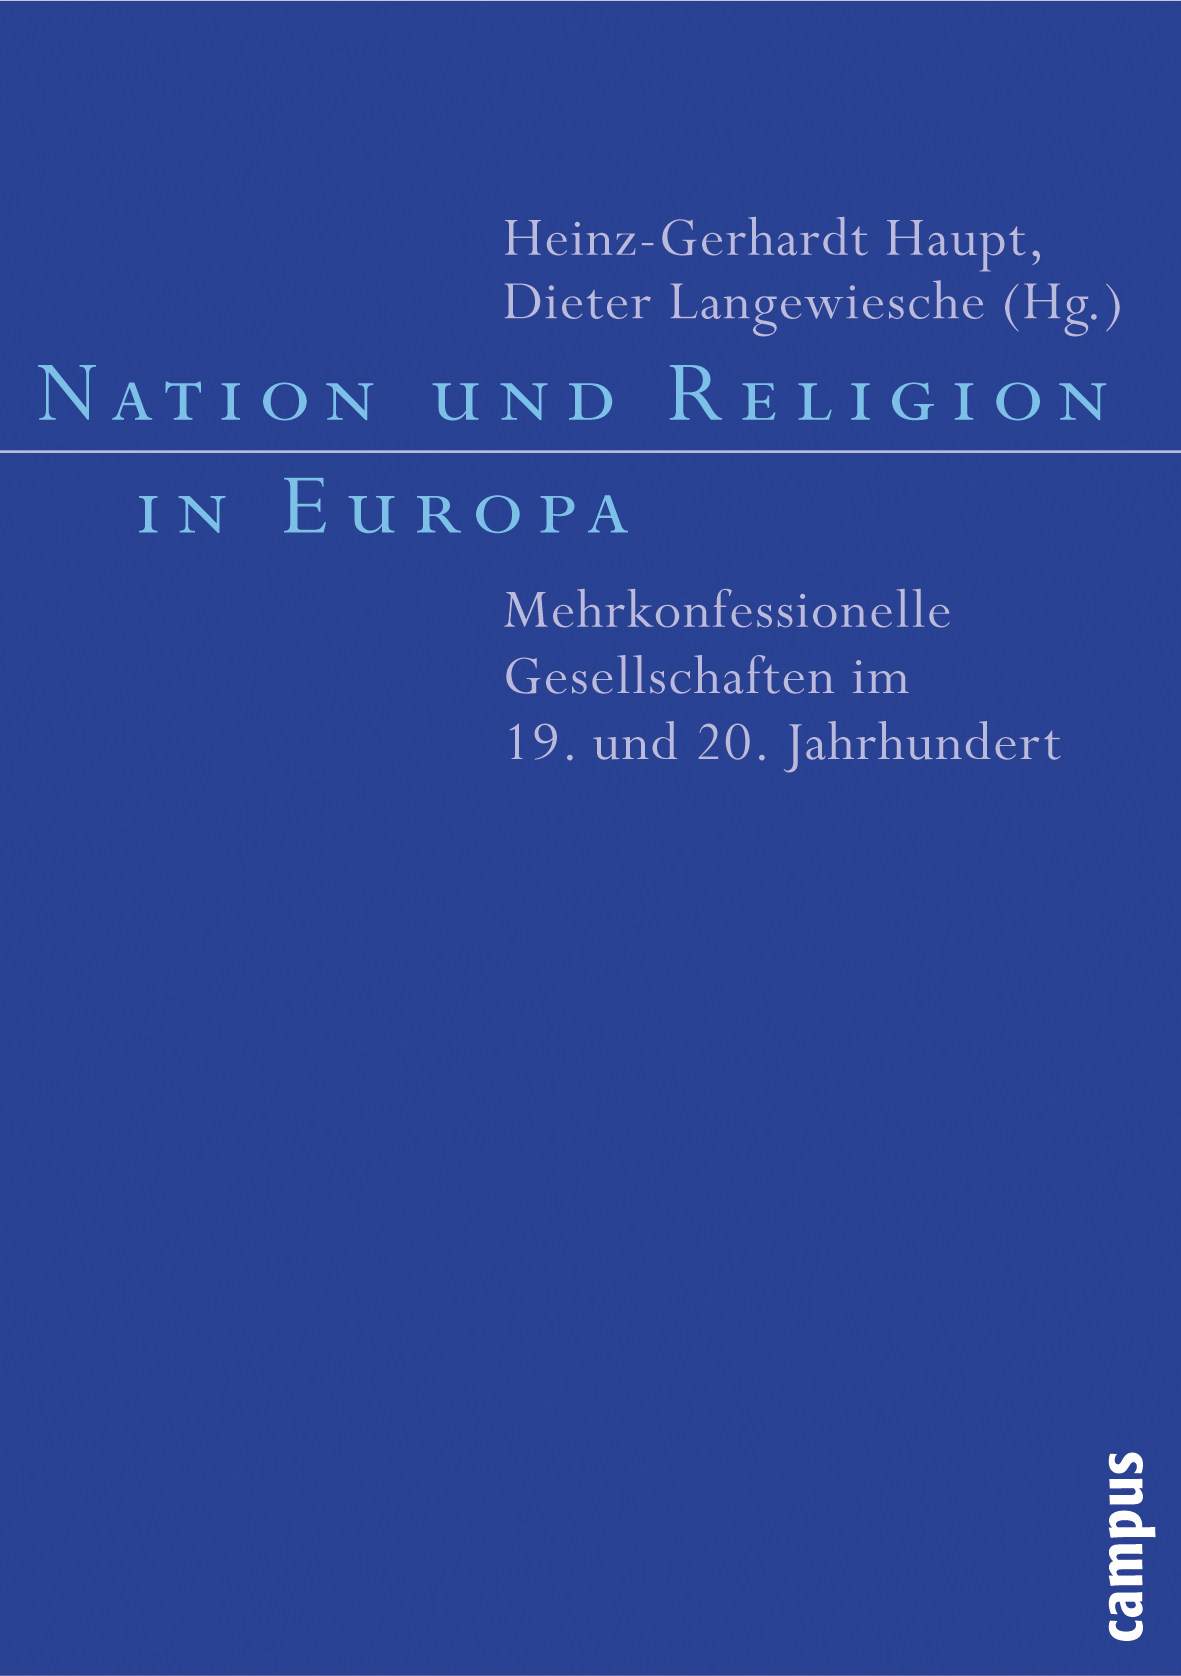 Nation und Religion in Europa